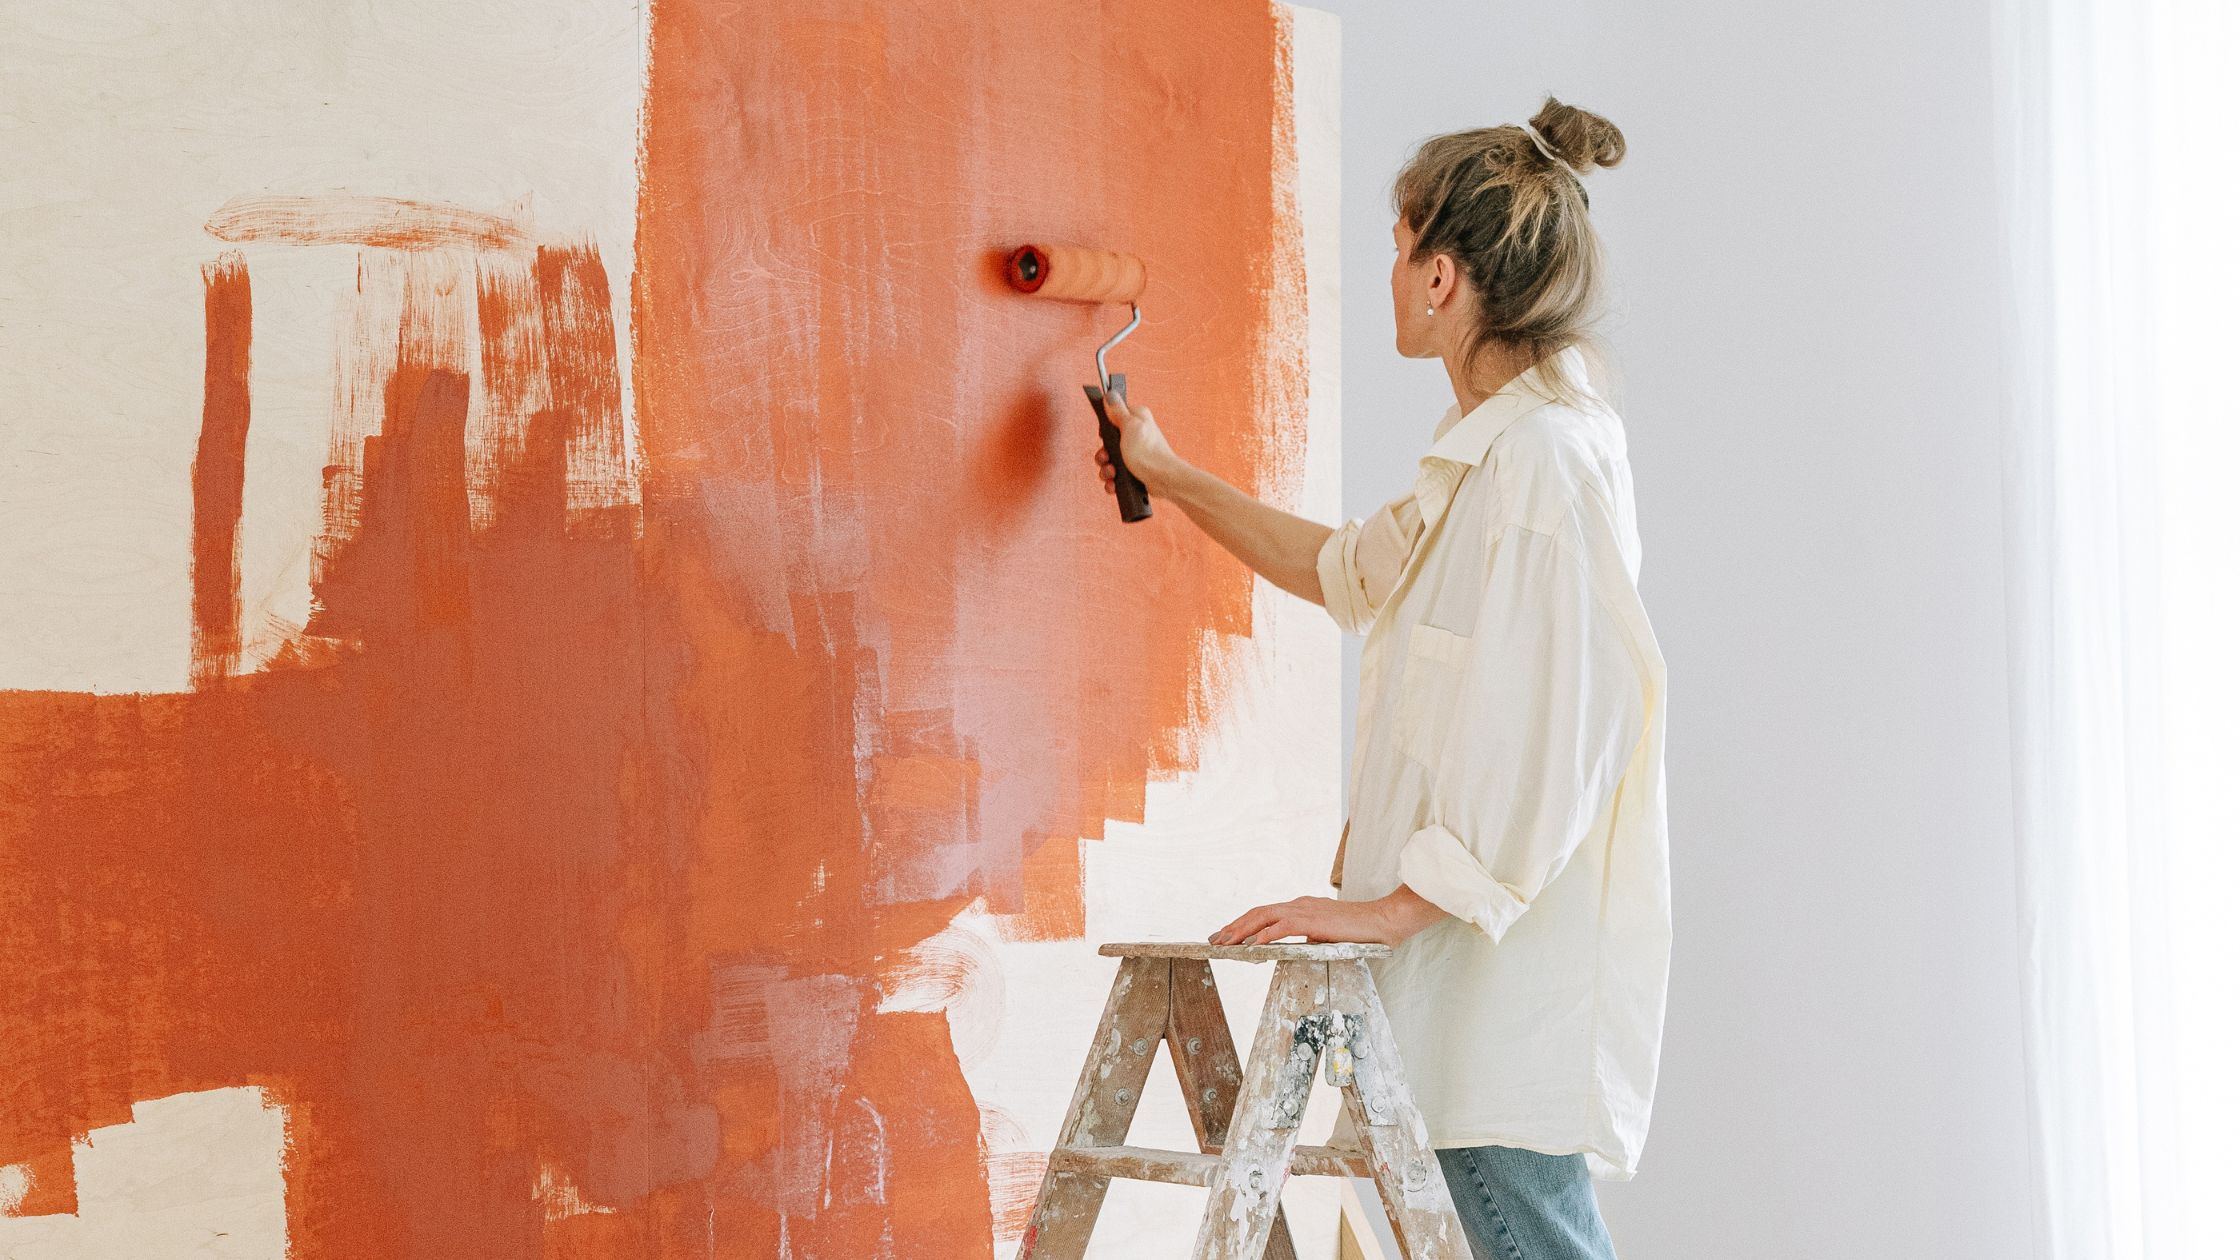 Pintura de Paredes: Dicas infalíveis para pintar paredes como um profissional